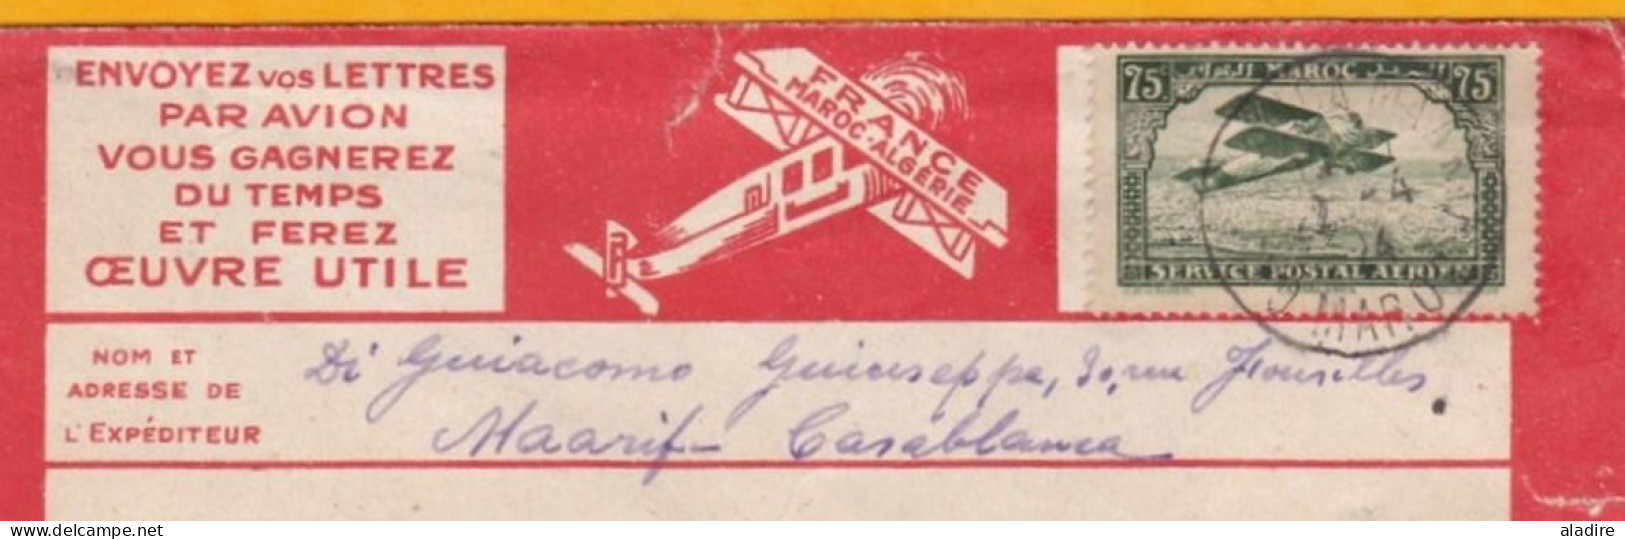 1924 - Enveloppe Par Avion Précurseur Lignes Aériennes Latécoère De Casablanca Maarif Vers Saint Etienne, France - Luchtpost